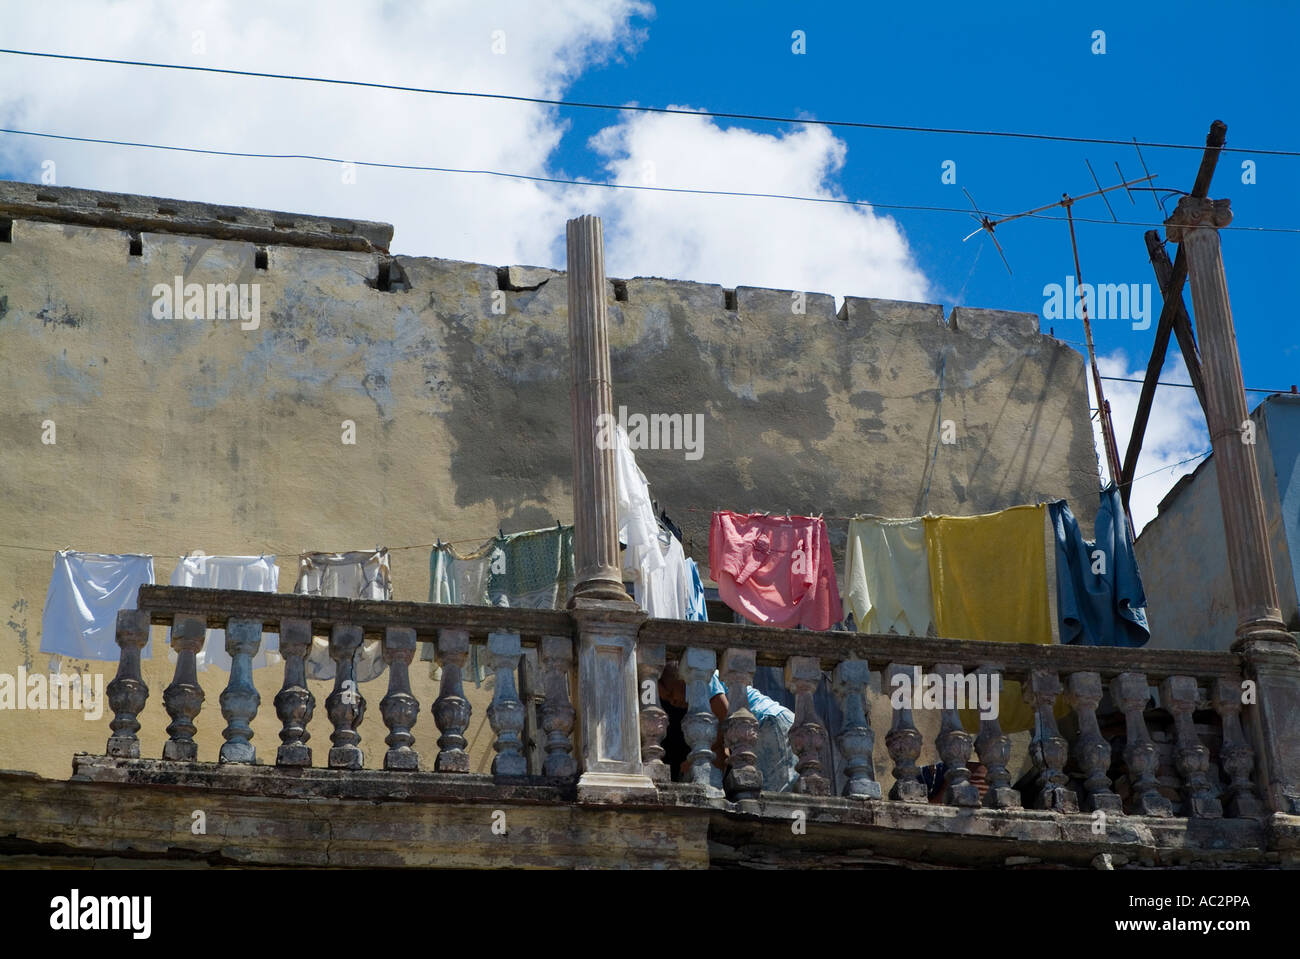 Drying laundry on a damaged balcony Cienfuegos Cuba Stock Photo